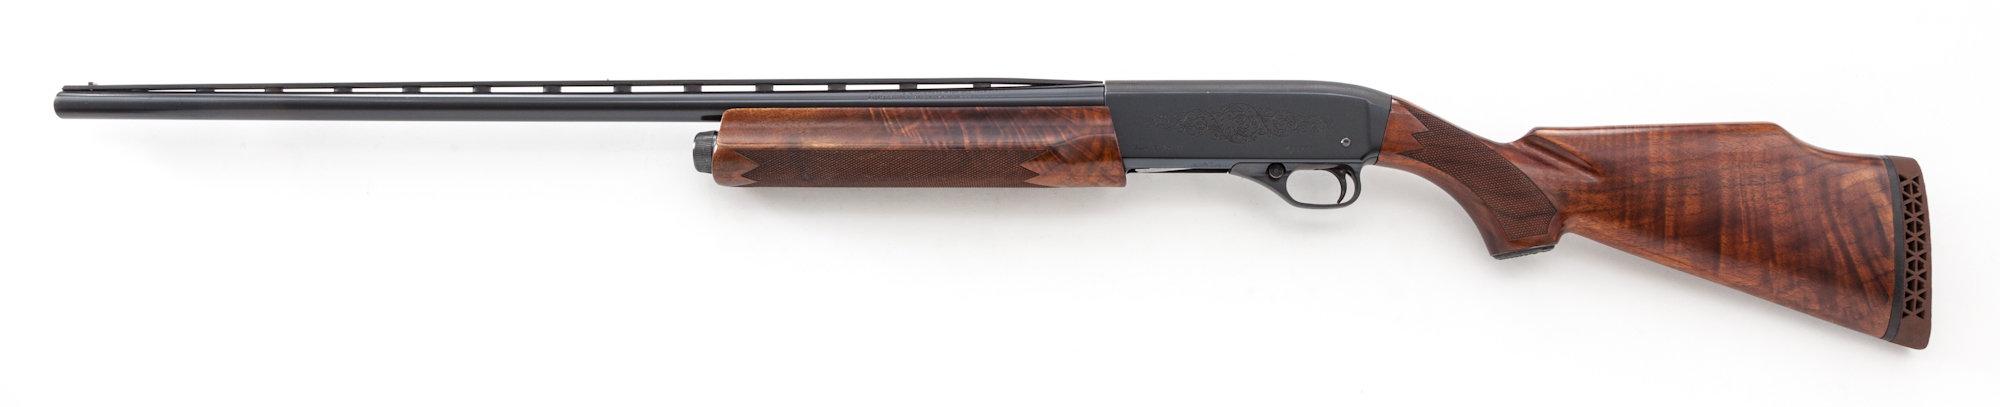 Winchester Super-X Model 1 Semi-Auto Trap Shotgun